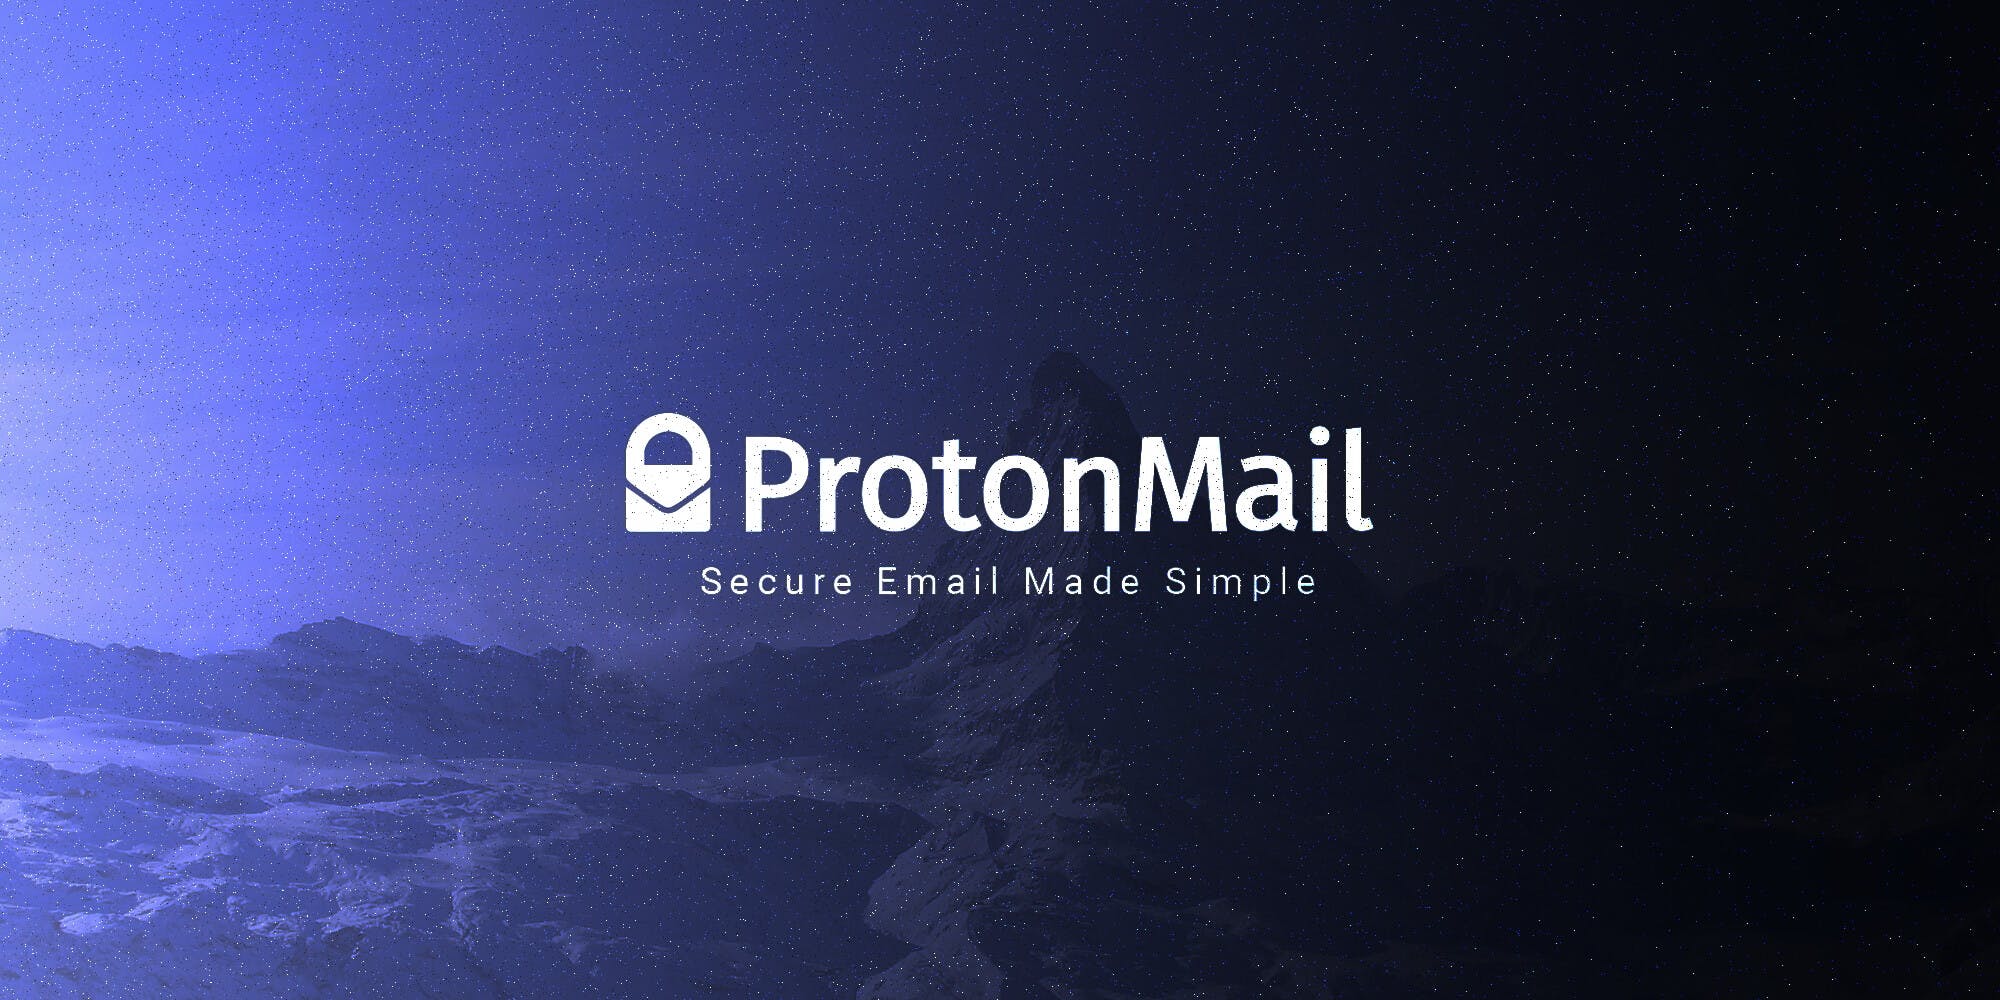 Den ultimative guide på dansk til at sende sikkermail som er krypteret. Få vejlening og information om ProtonMail.